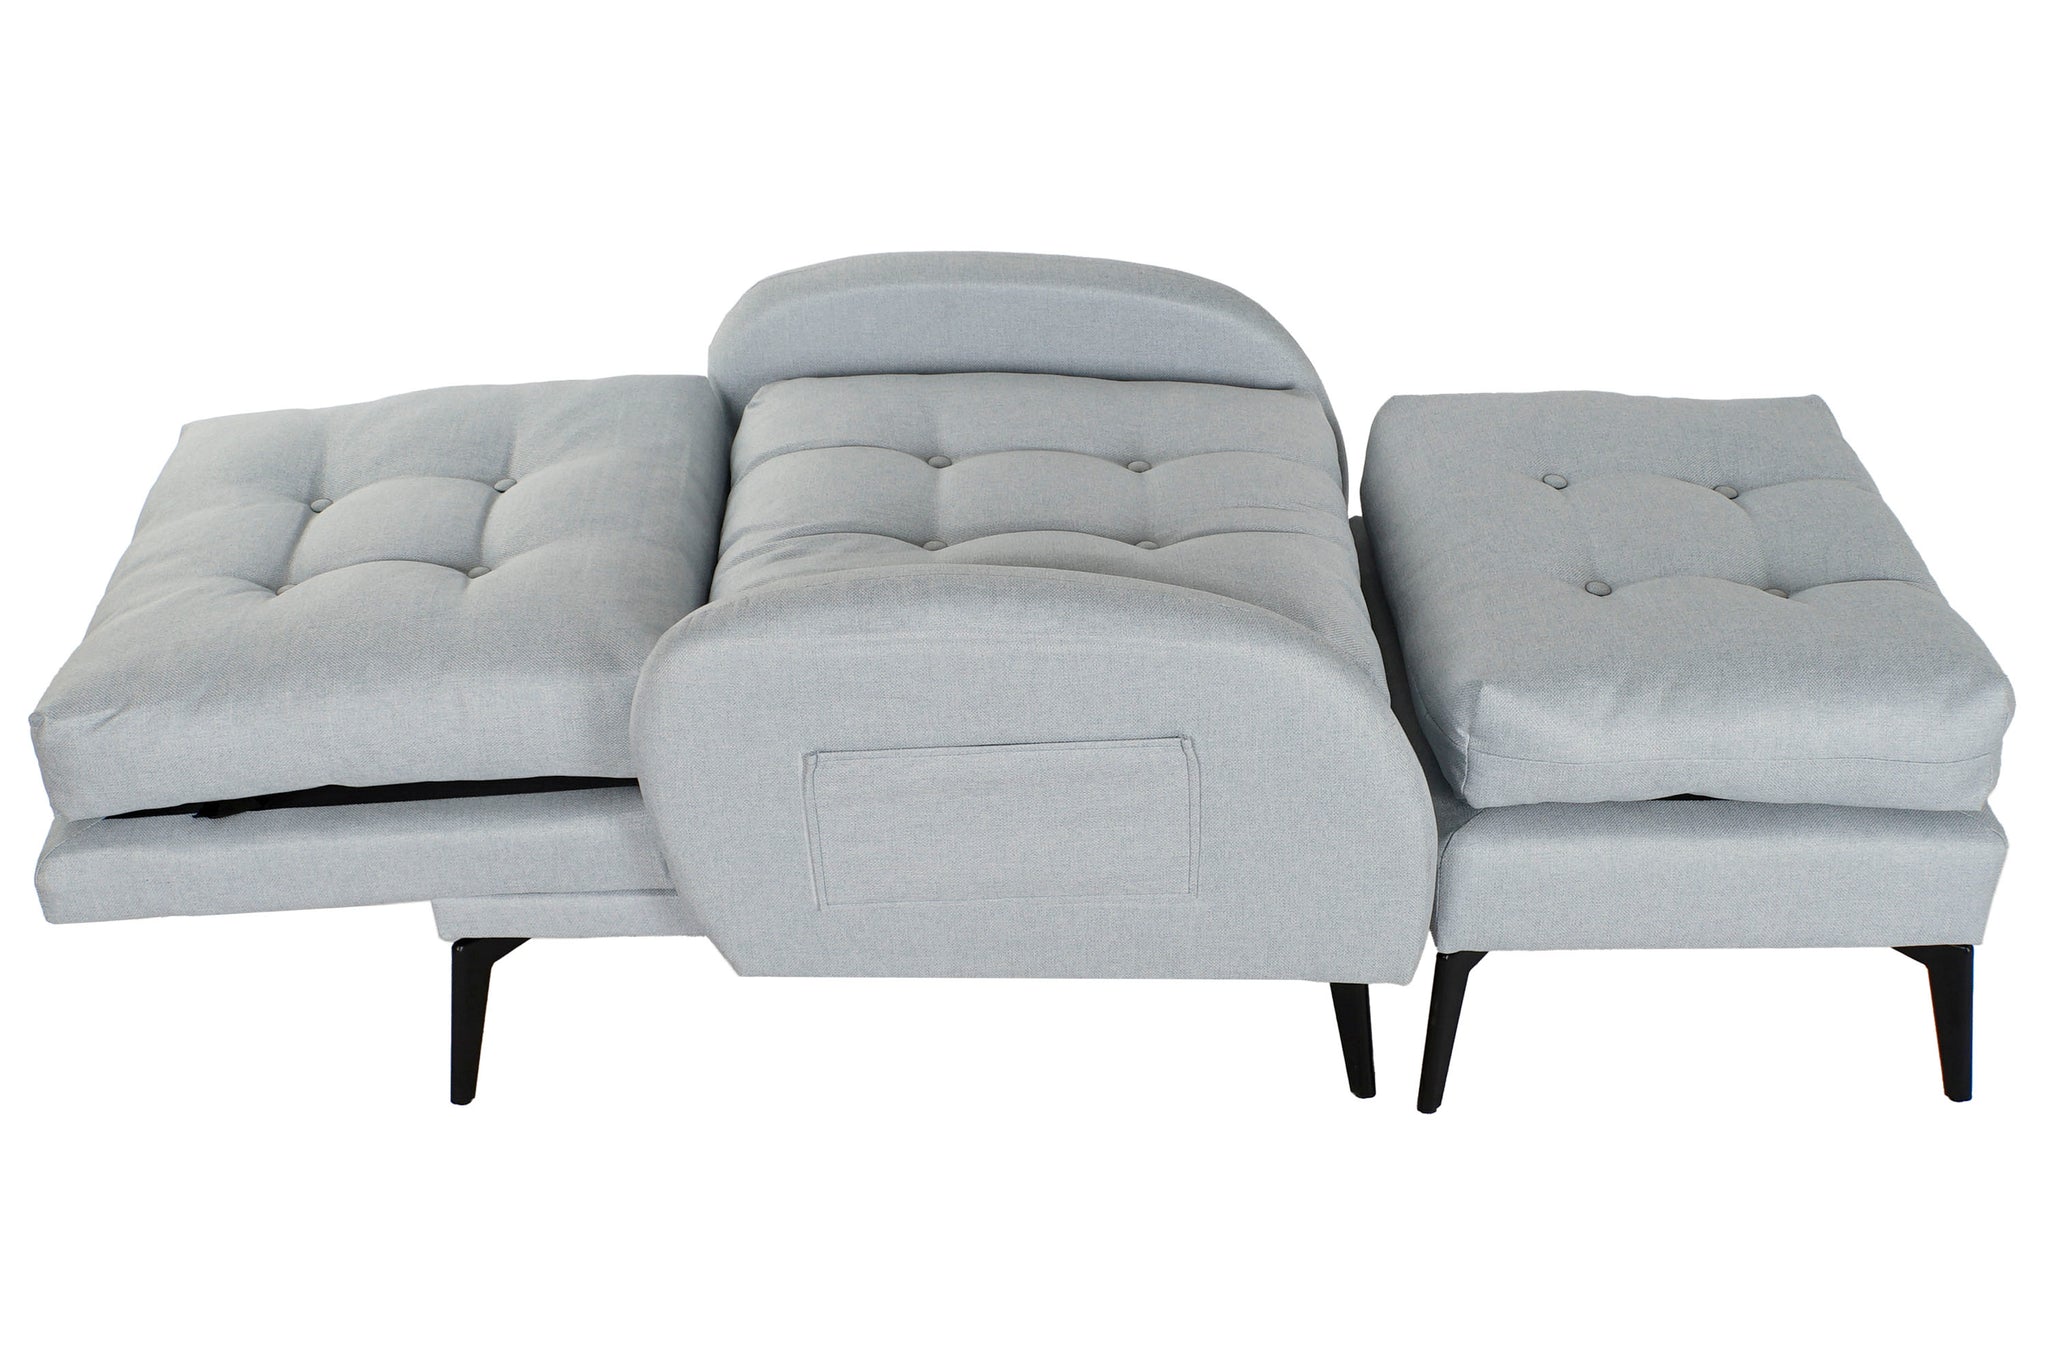 Sofa Cama Set 2 Poliester 74X85X90 Reclinable